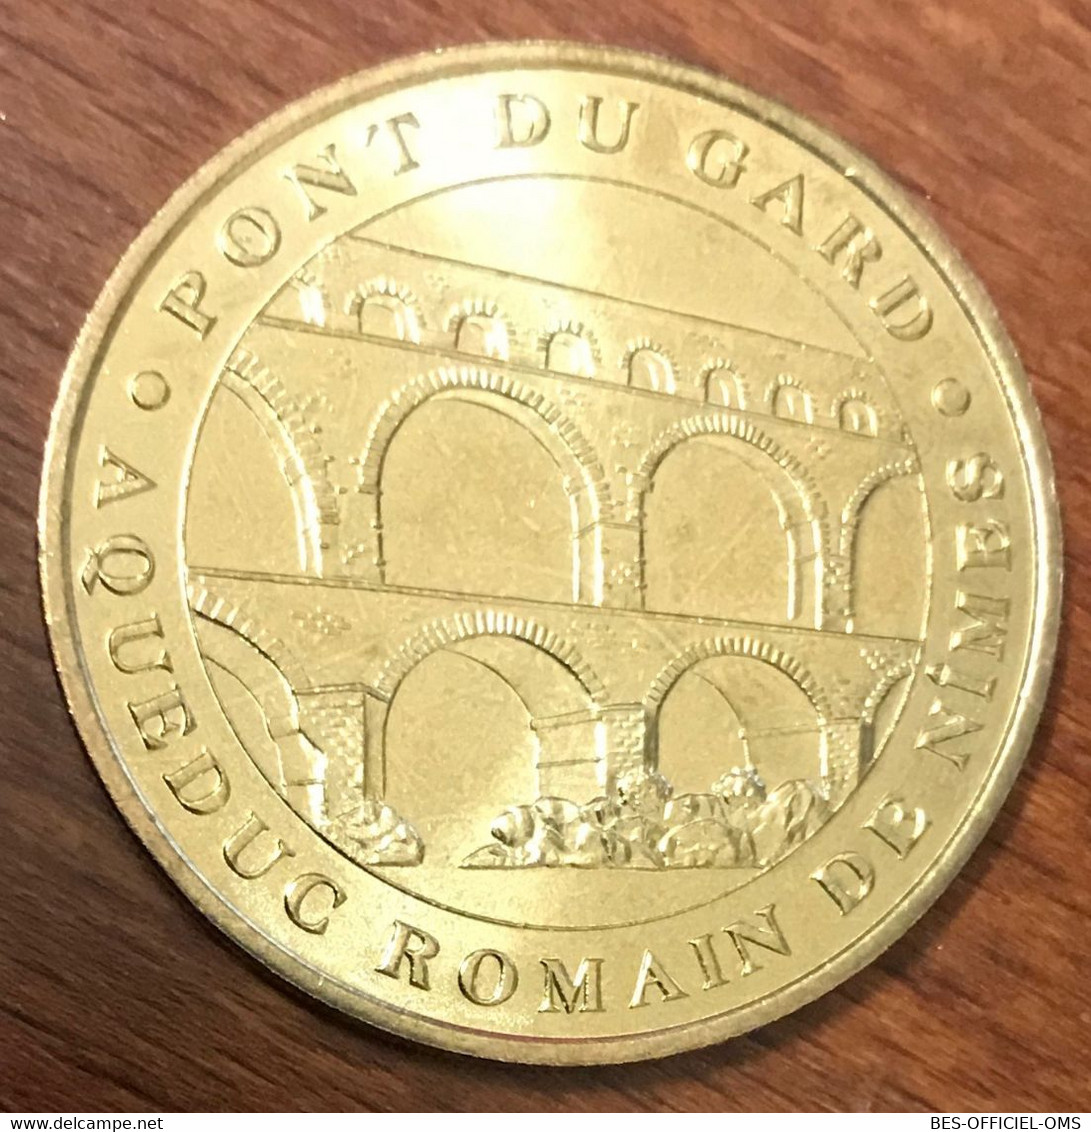 30 VERS PONT DU GARD MDP 2005 BAS MEDAILLE SOUVENIR MONNAIE DE PARIS JETON TOURISTIQUE MEDALS COINS TOKENS - 2005